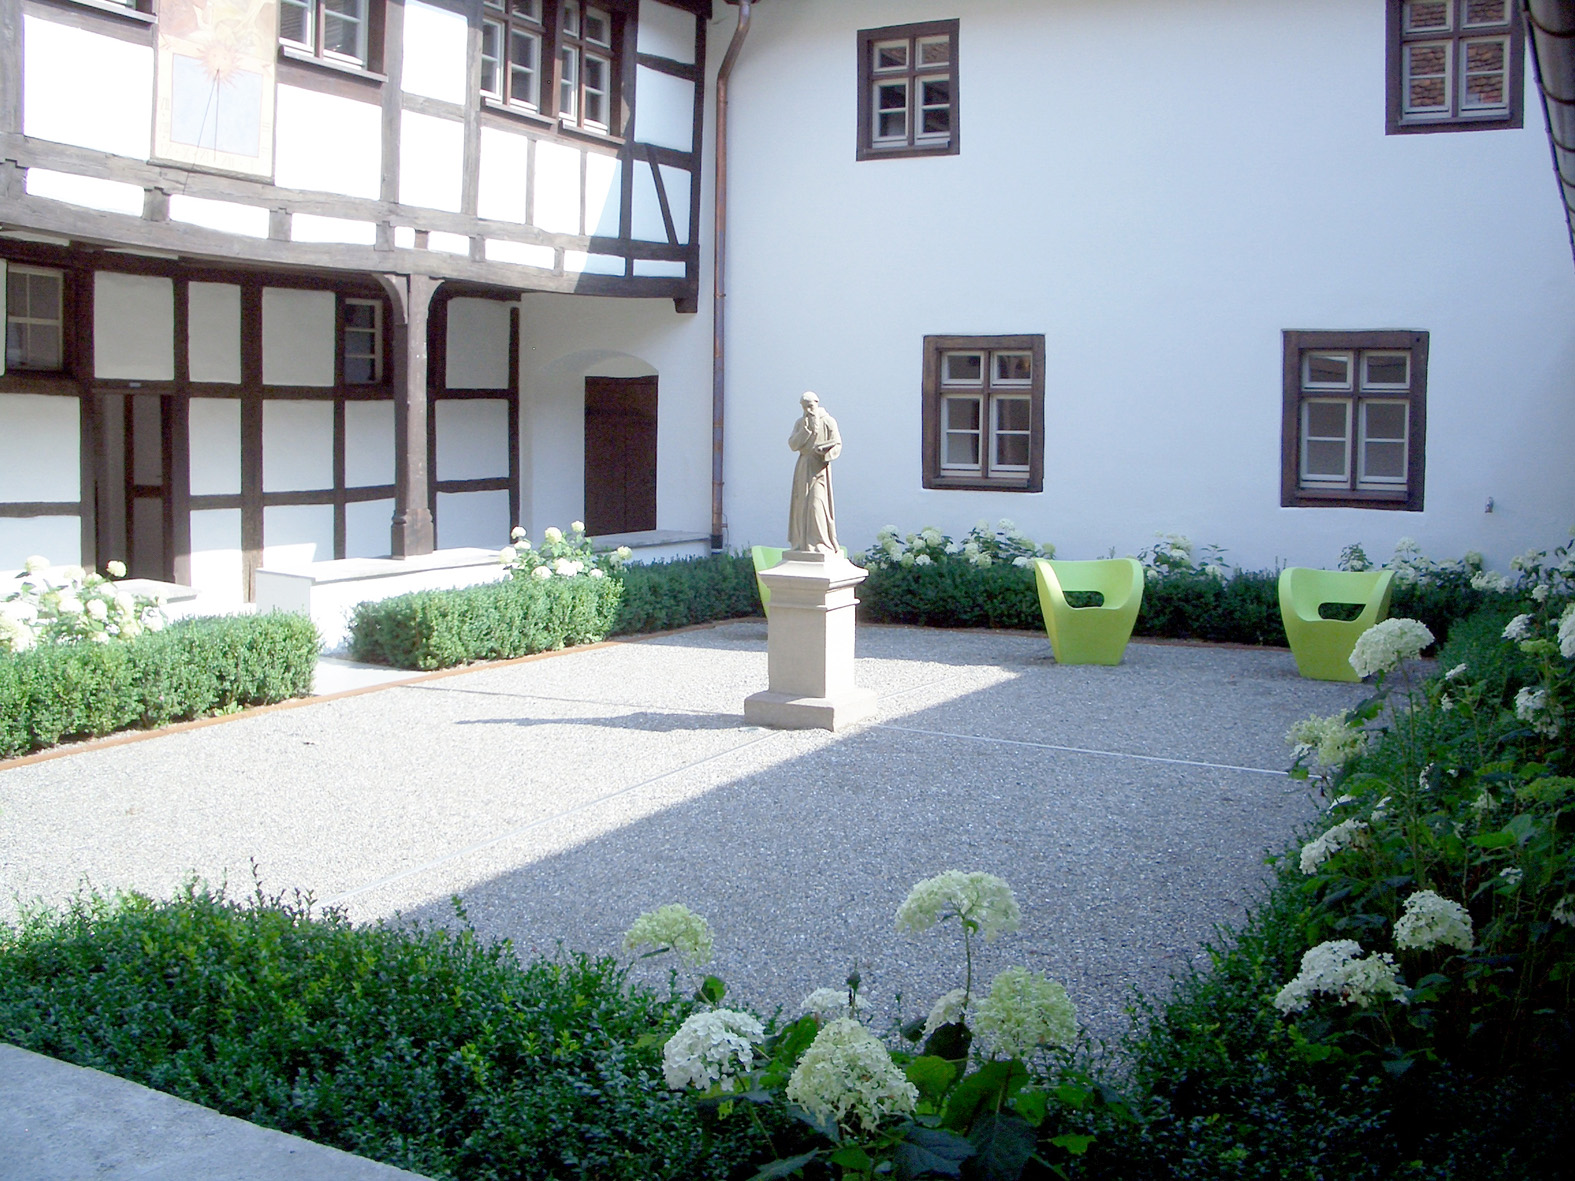 Kloster Riedlingen